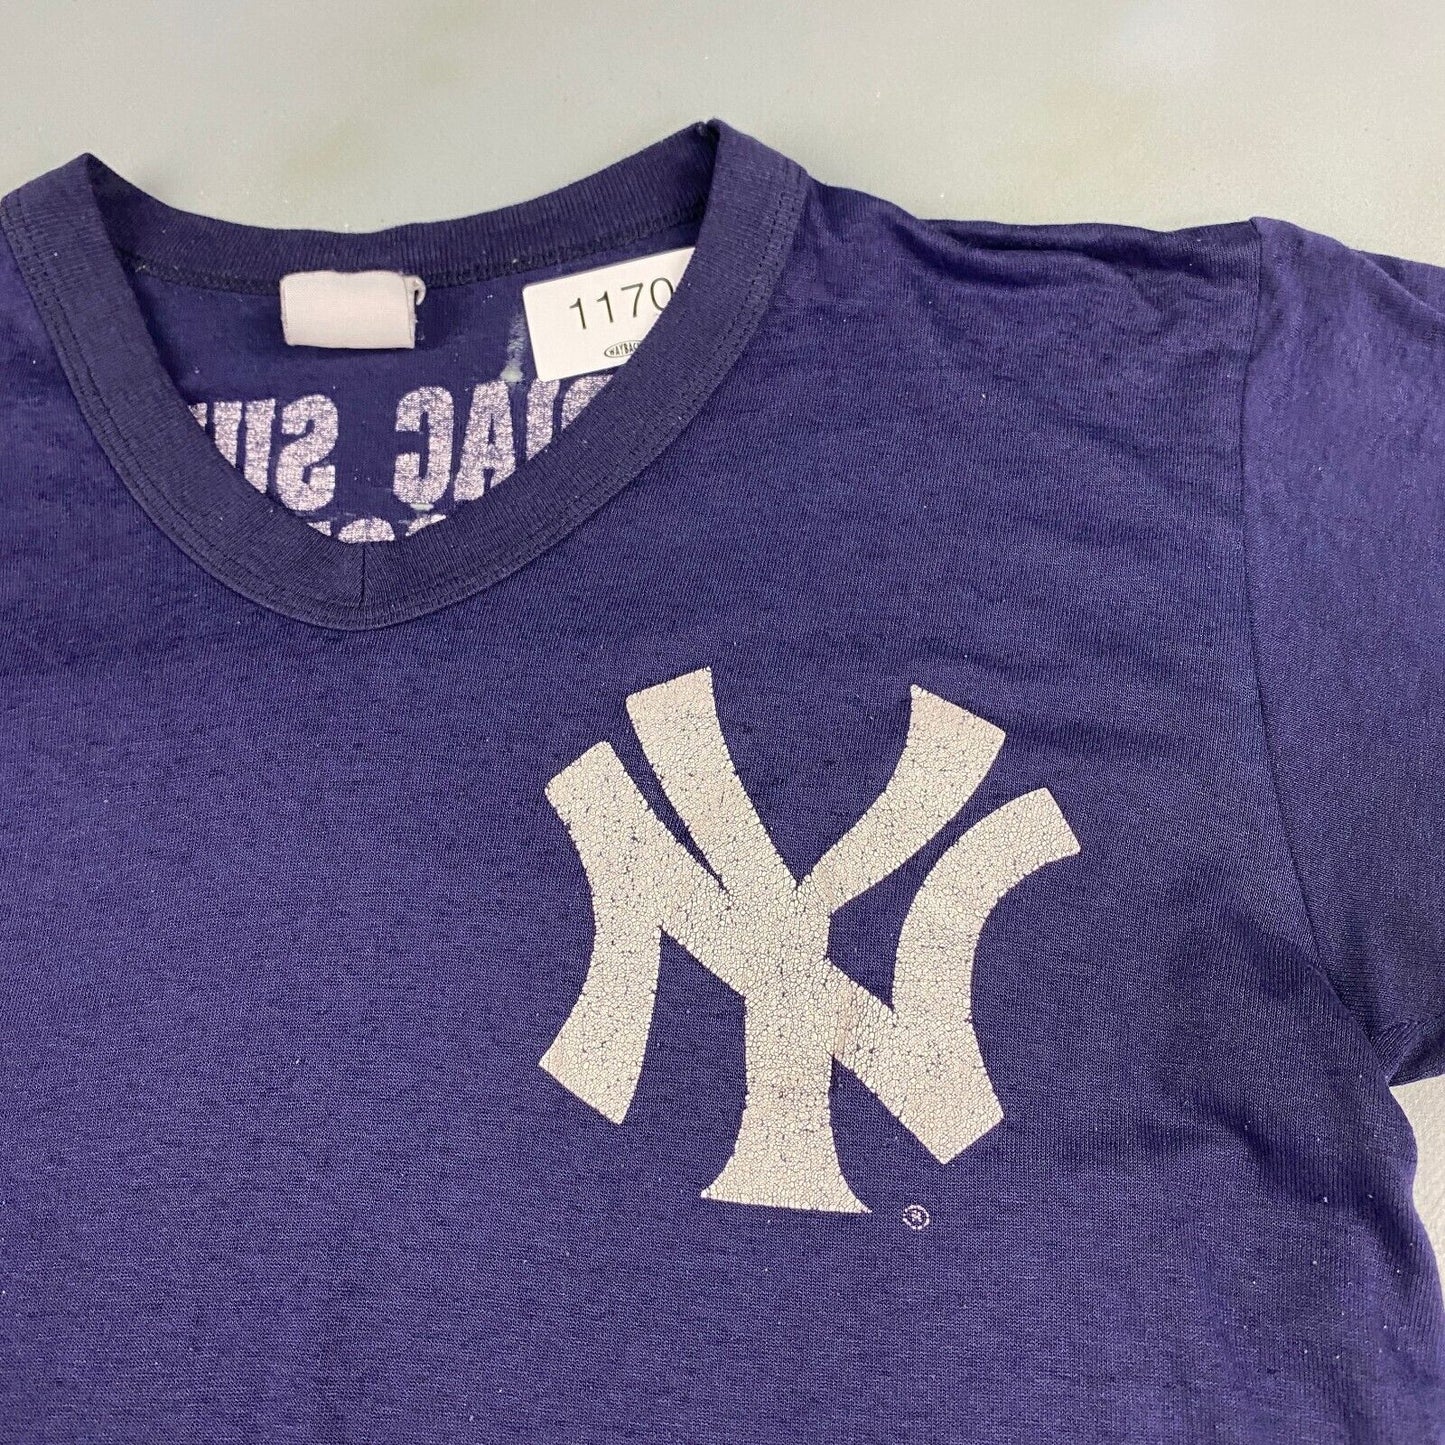 VINTAGE 80s NY Yankees Cardiac Surgery Navy T-Shirt sz Medium Adult